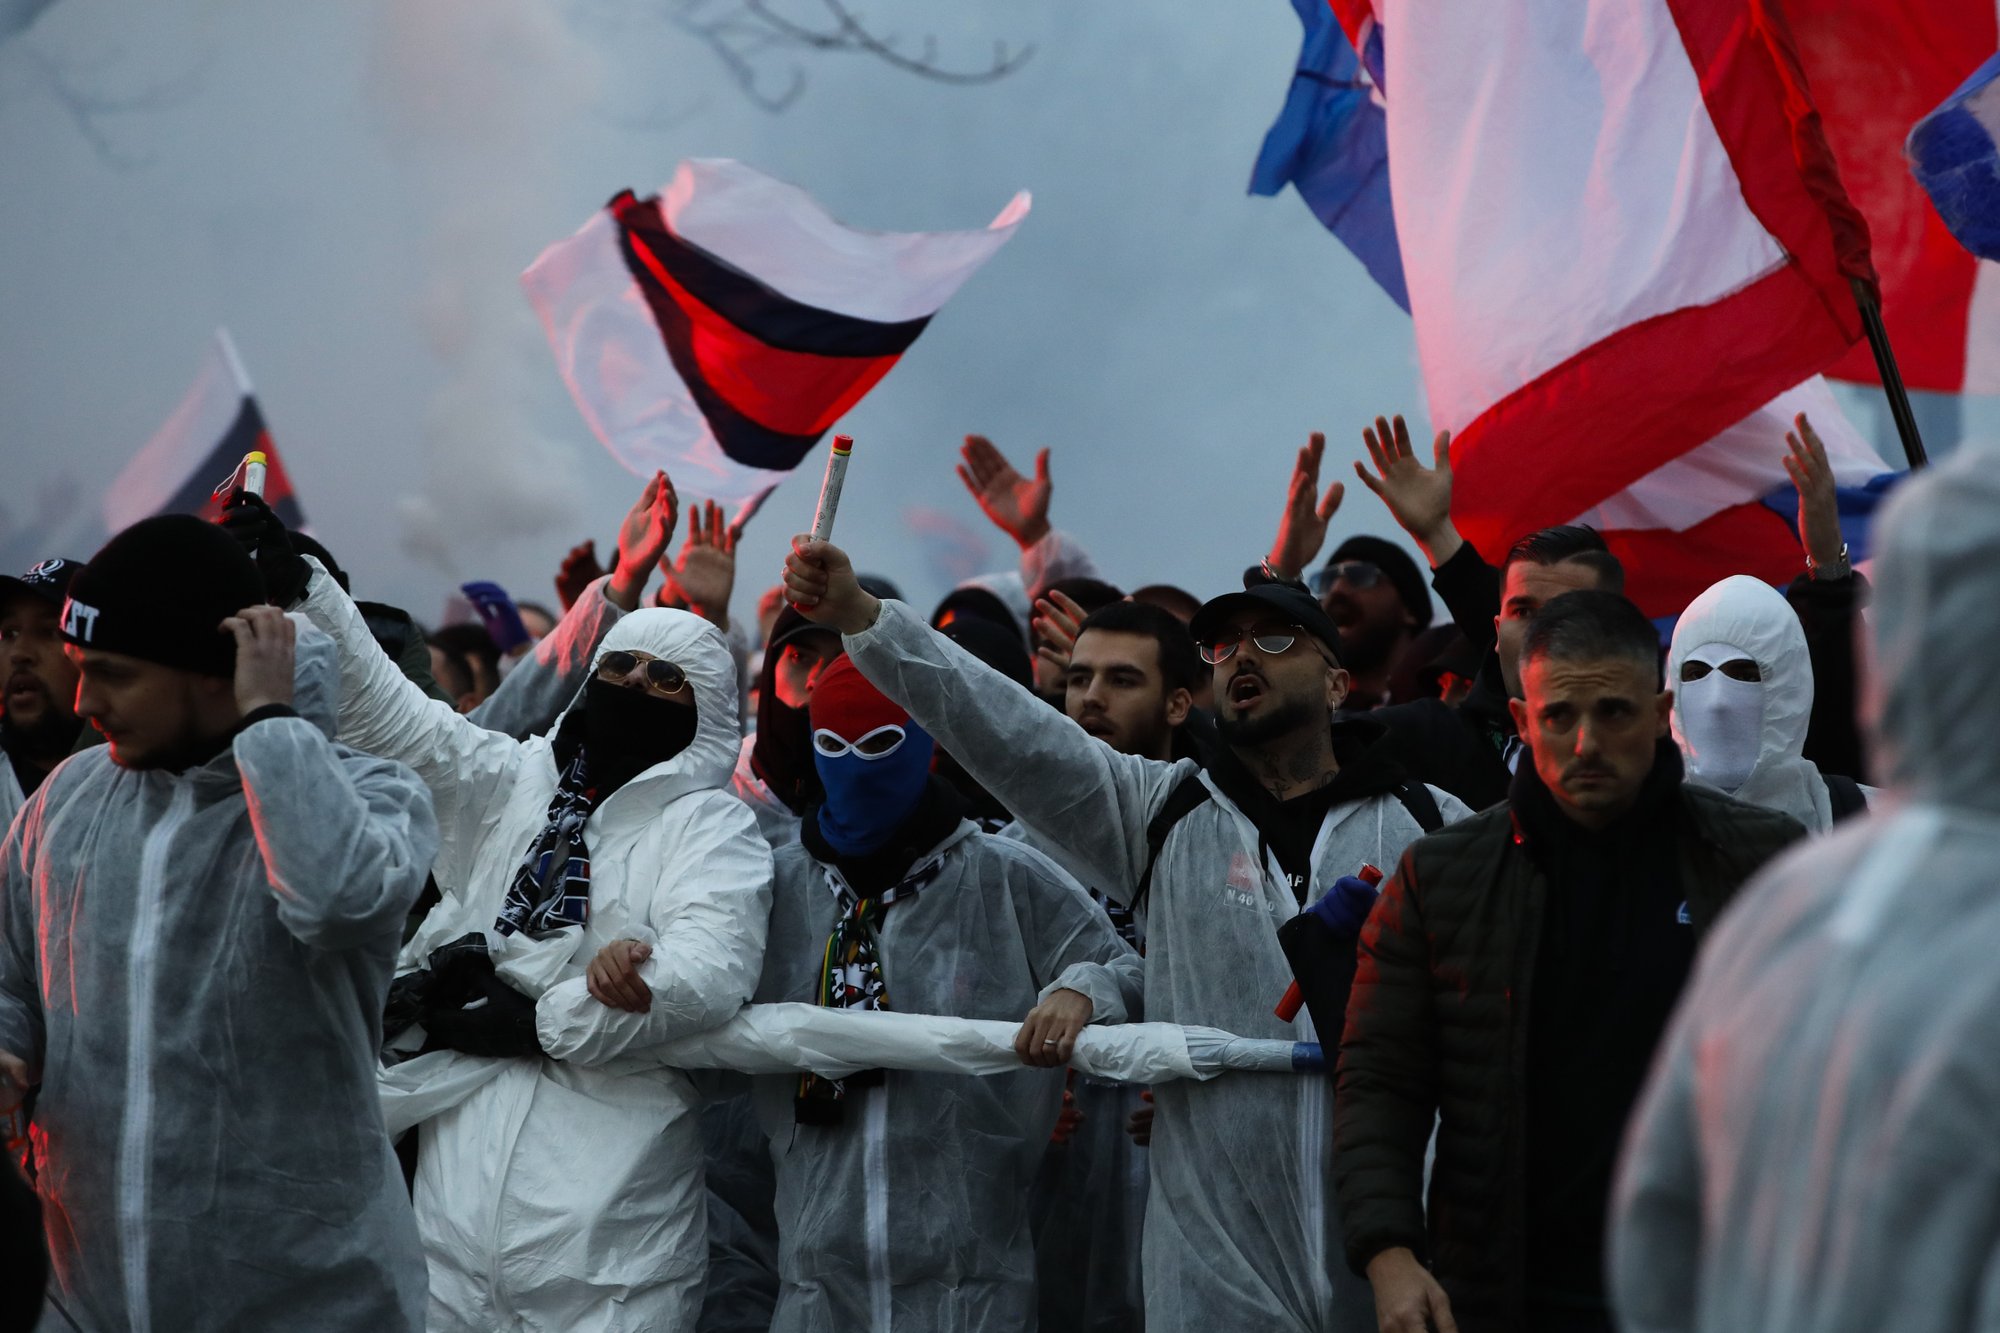 Người hâm mộ tụ tập đông đúc để cổ vũ clb bóng đá PSG trong dịch Covid-19 tại Pháp hôm 11.3 (ảnh: Euronews)